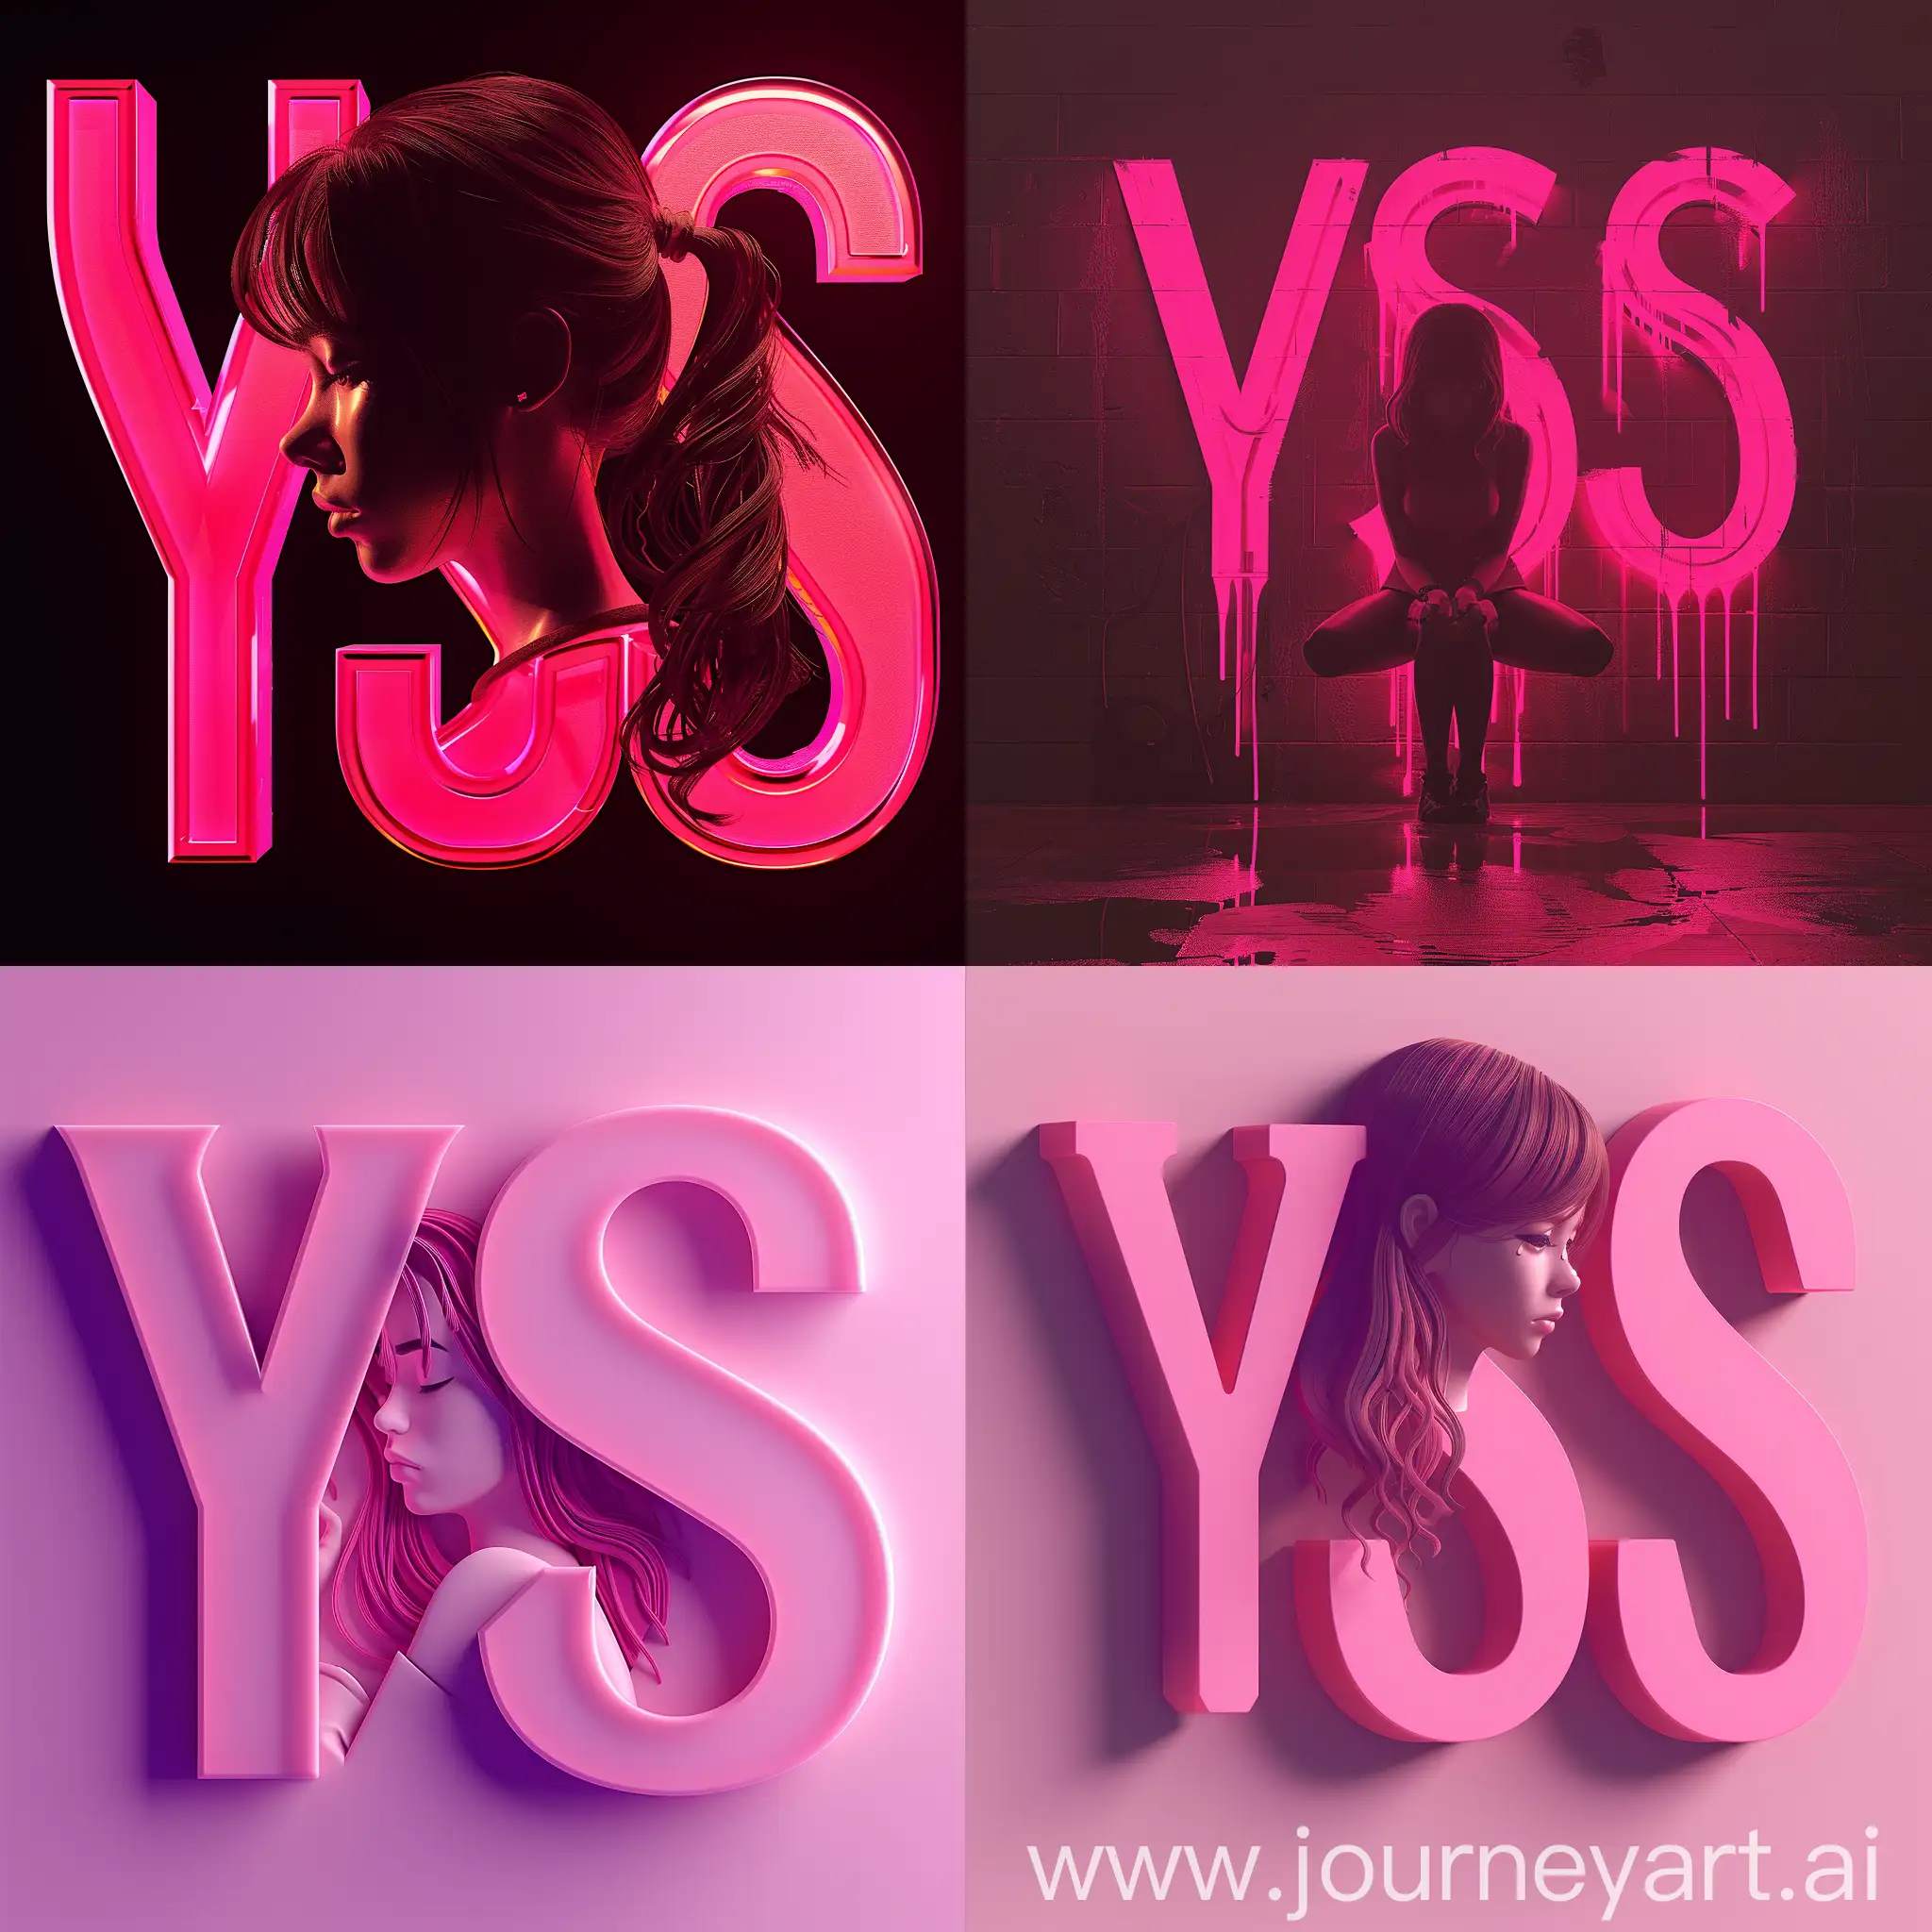 Игровой логотип, 8K, V-ray, photo, мягкие и изогнутые буквы "YSS" в нежных оттенках розового, силуэт грустной девушки между буквами, --s 300